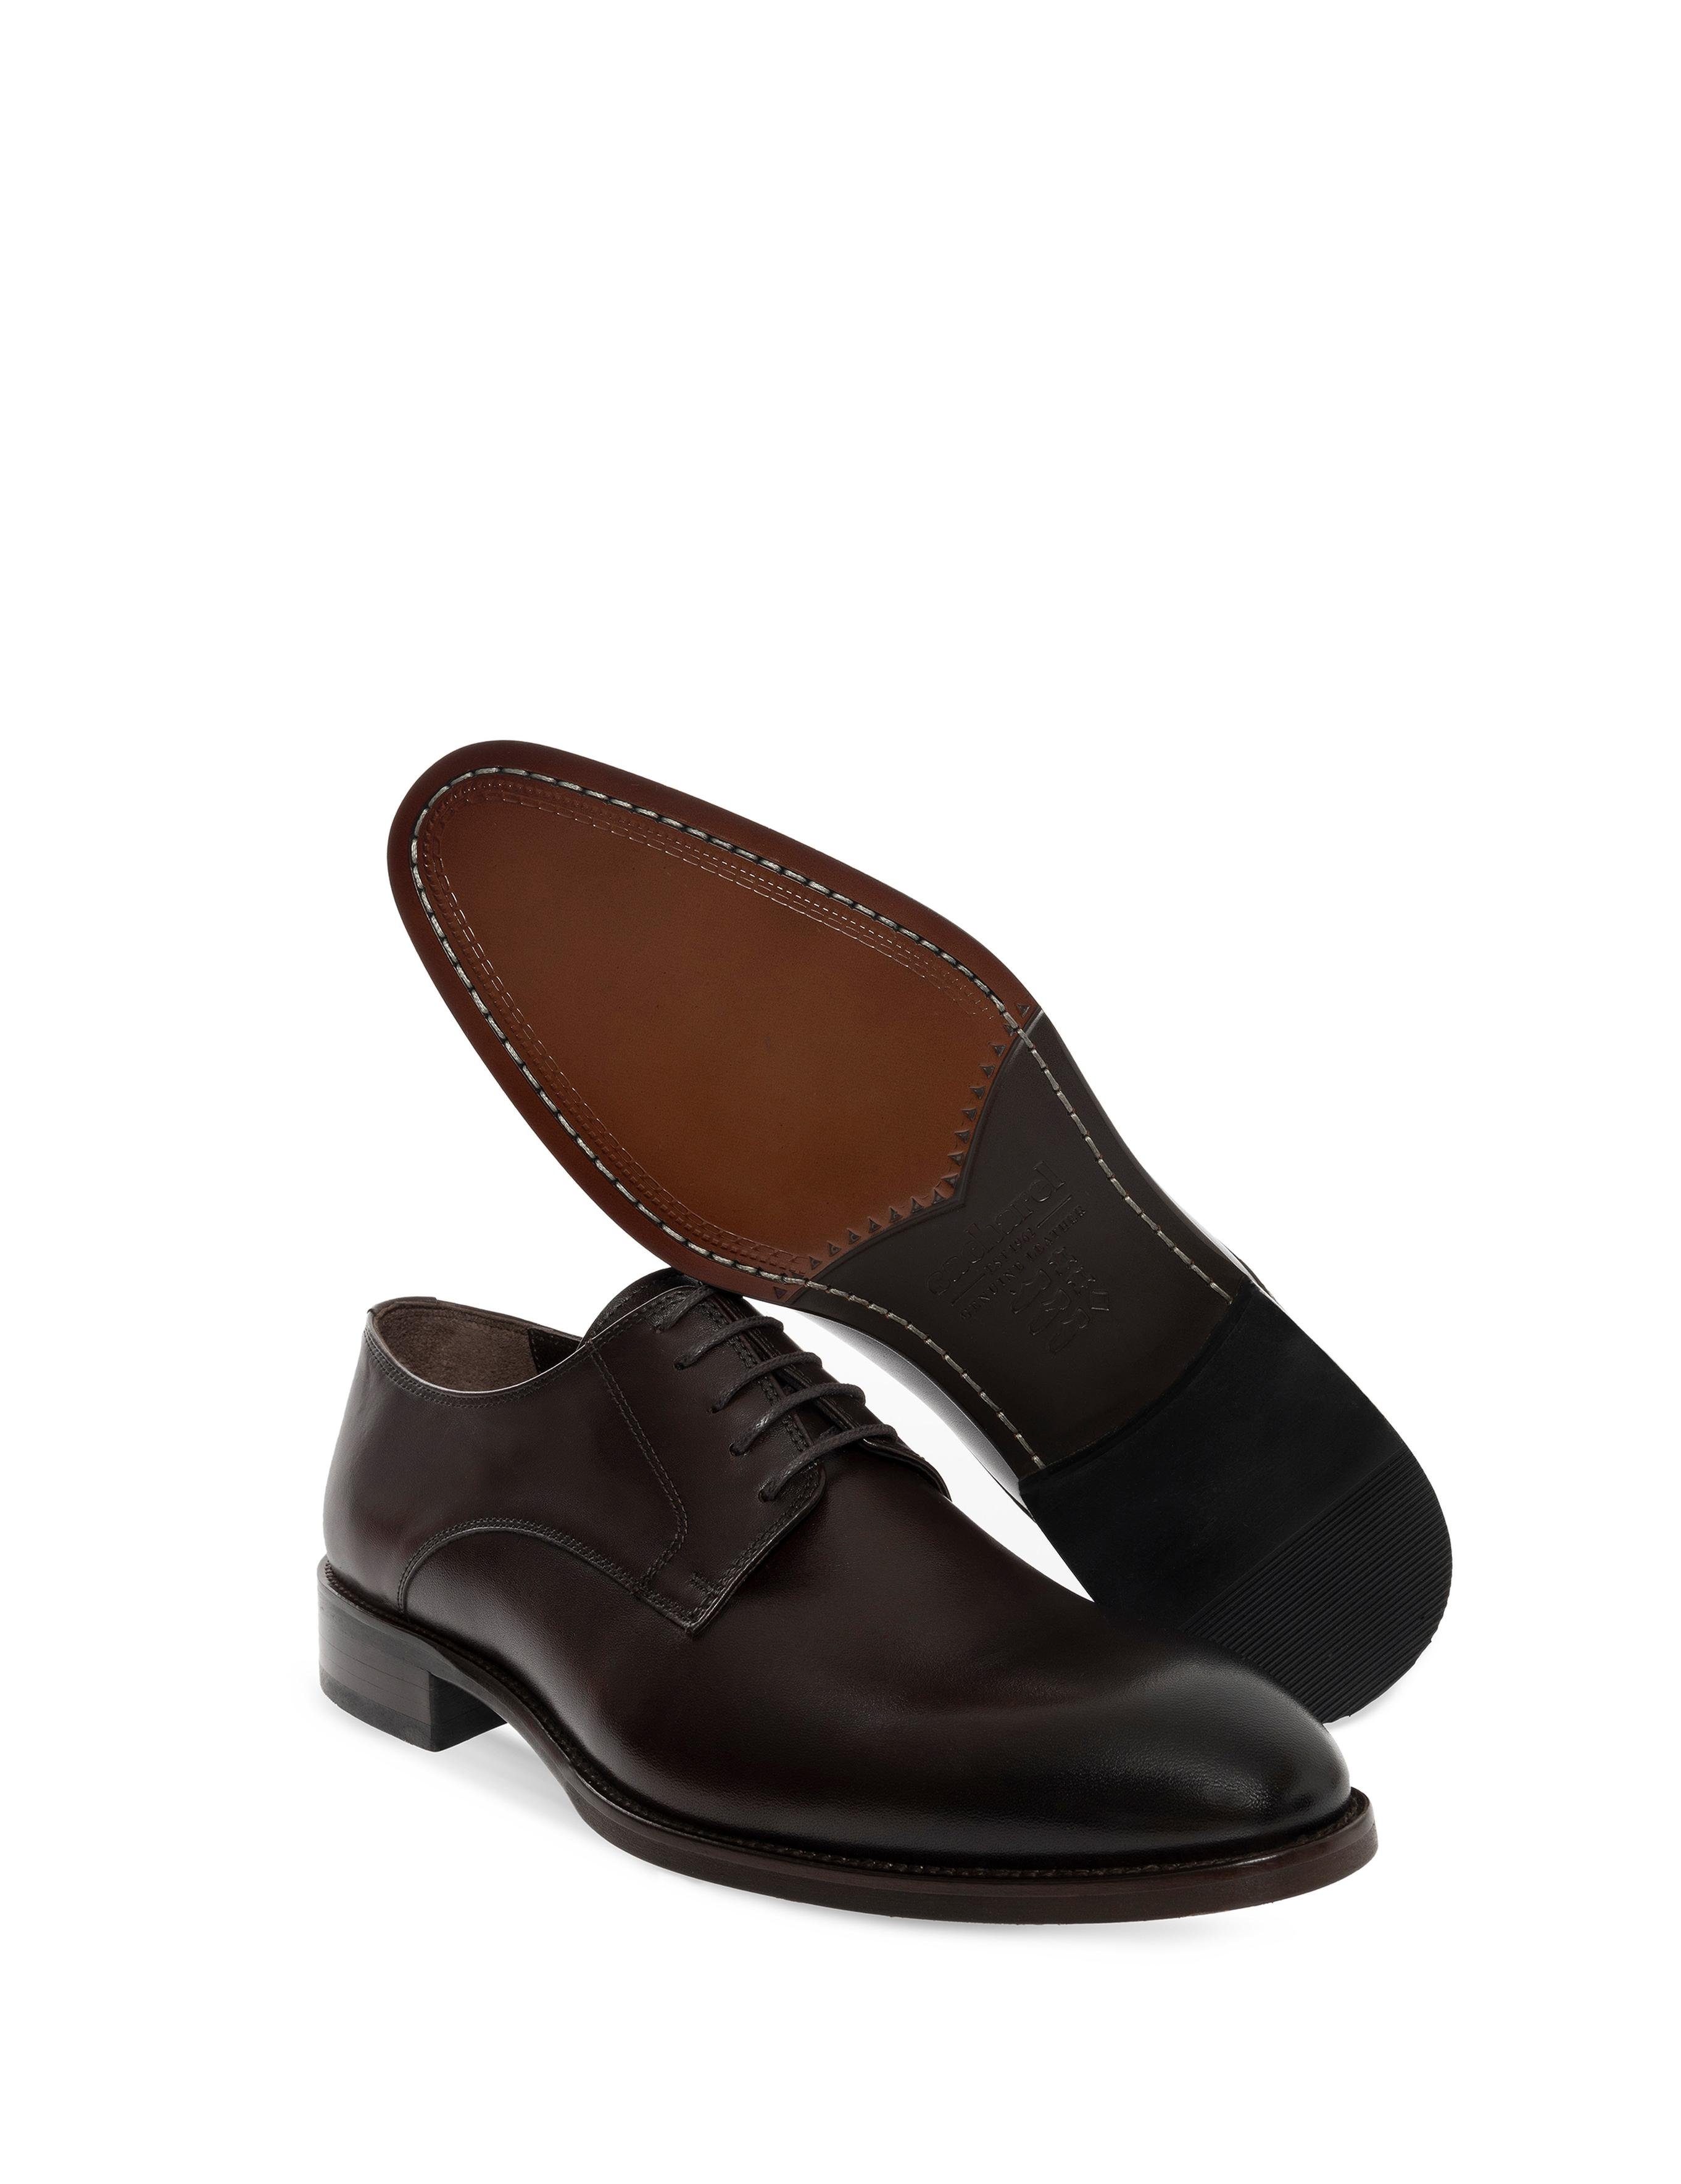 Kahverengi Klasik Ayakkabı - 50276620001